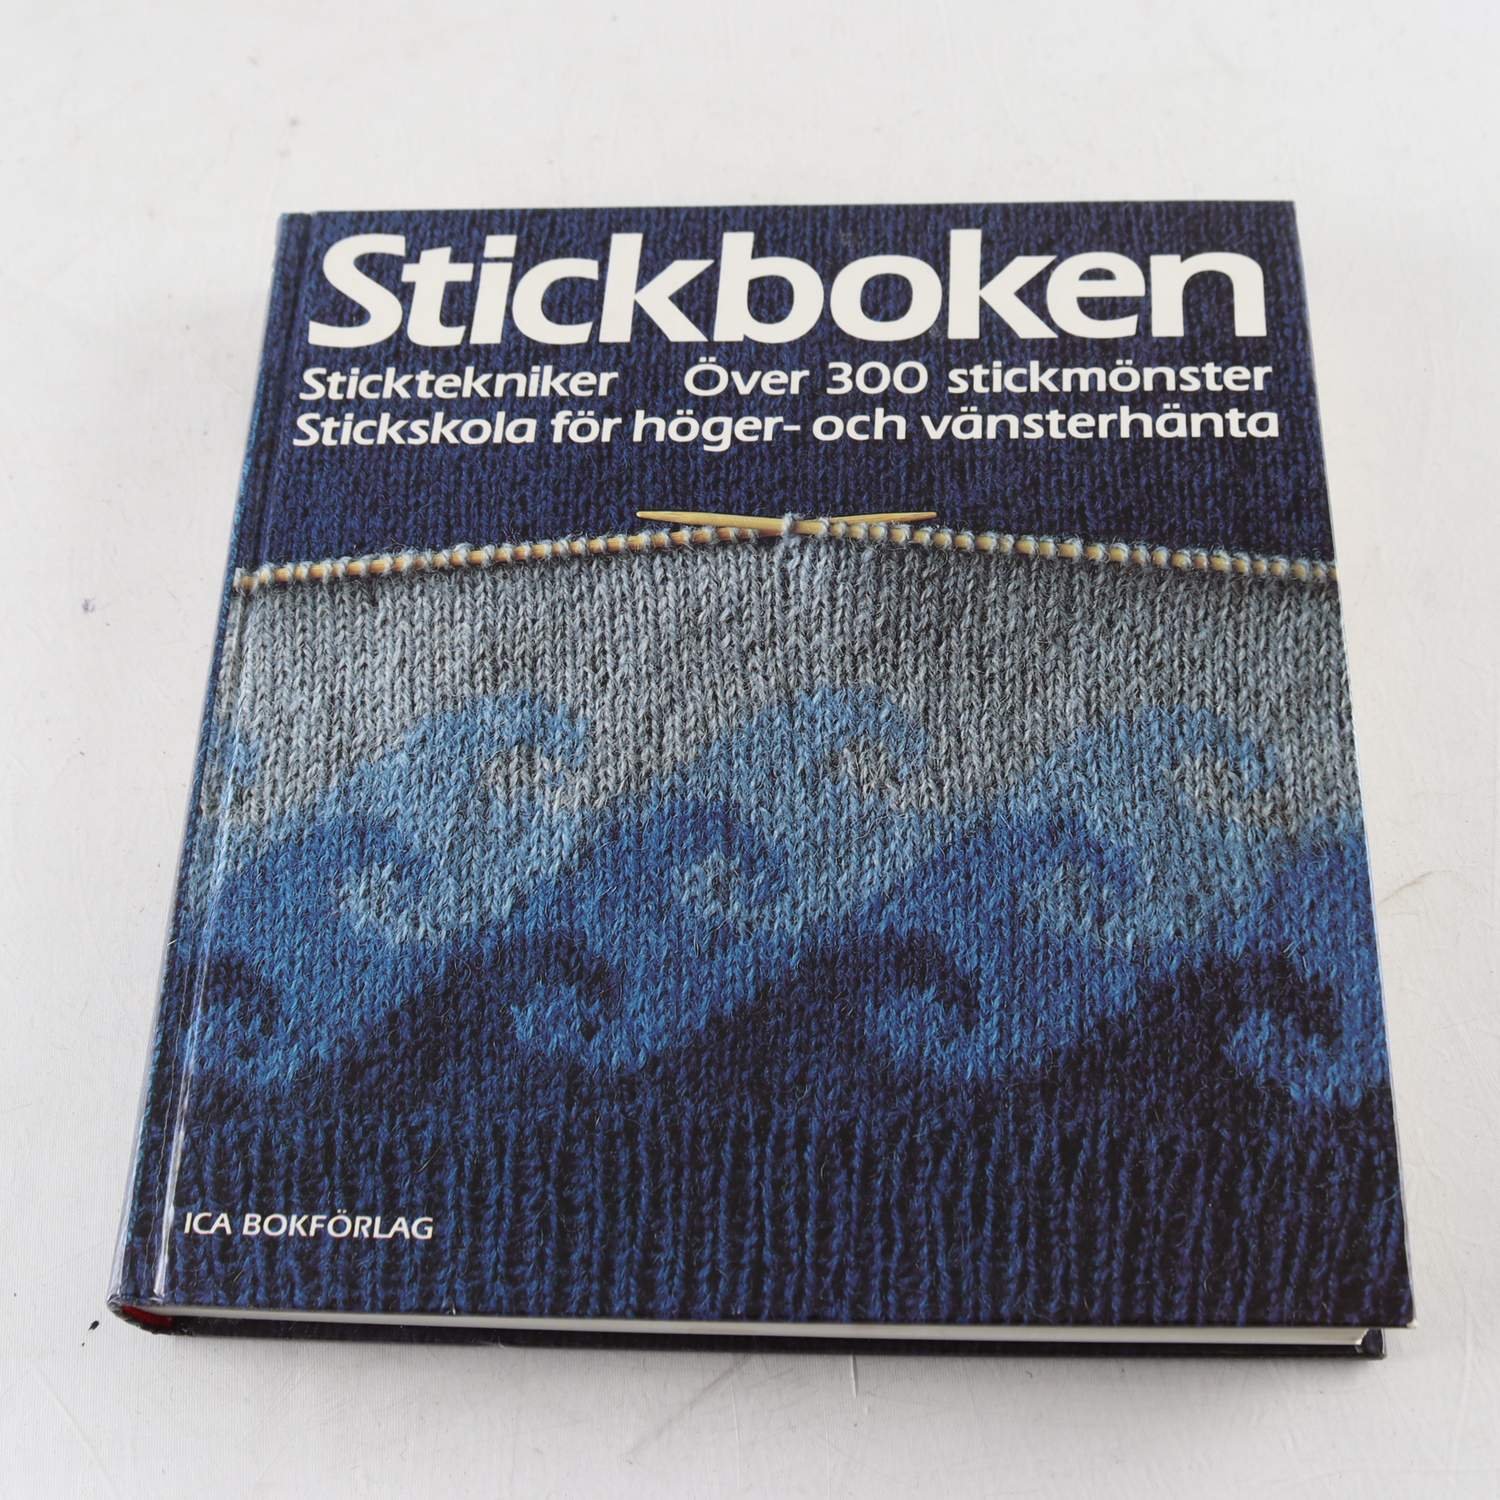 Stickboken: Sticktekniker, över 300 Stickmönster